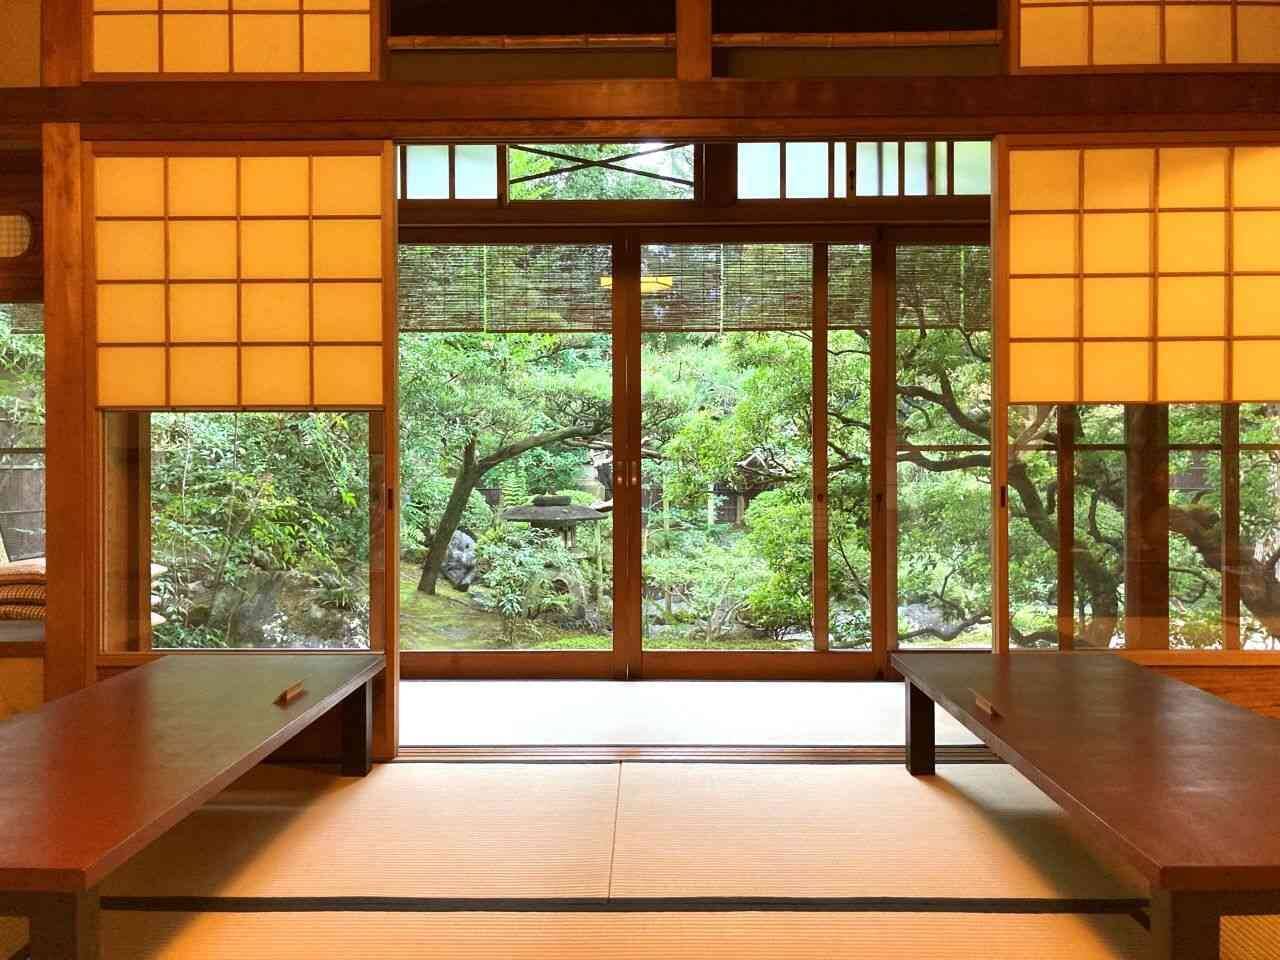 【京都おすすめスイーツ】茶寮 宝泉で楽しむ季節限定「白小豆ぜんざい」と日本庭園